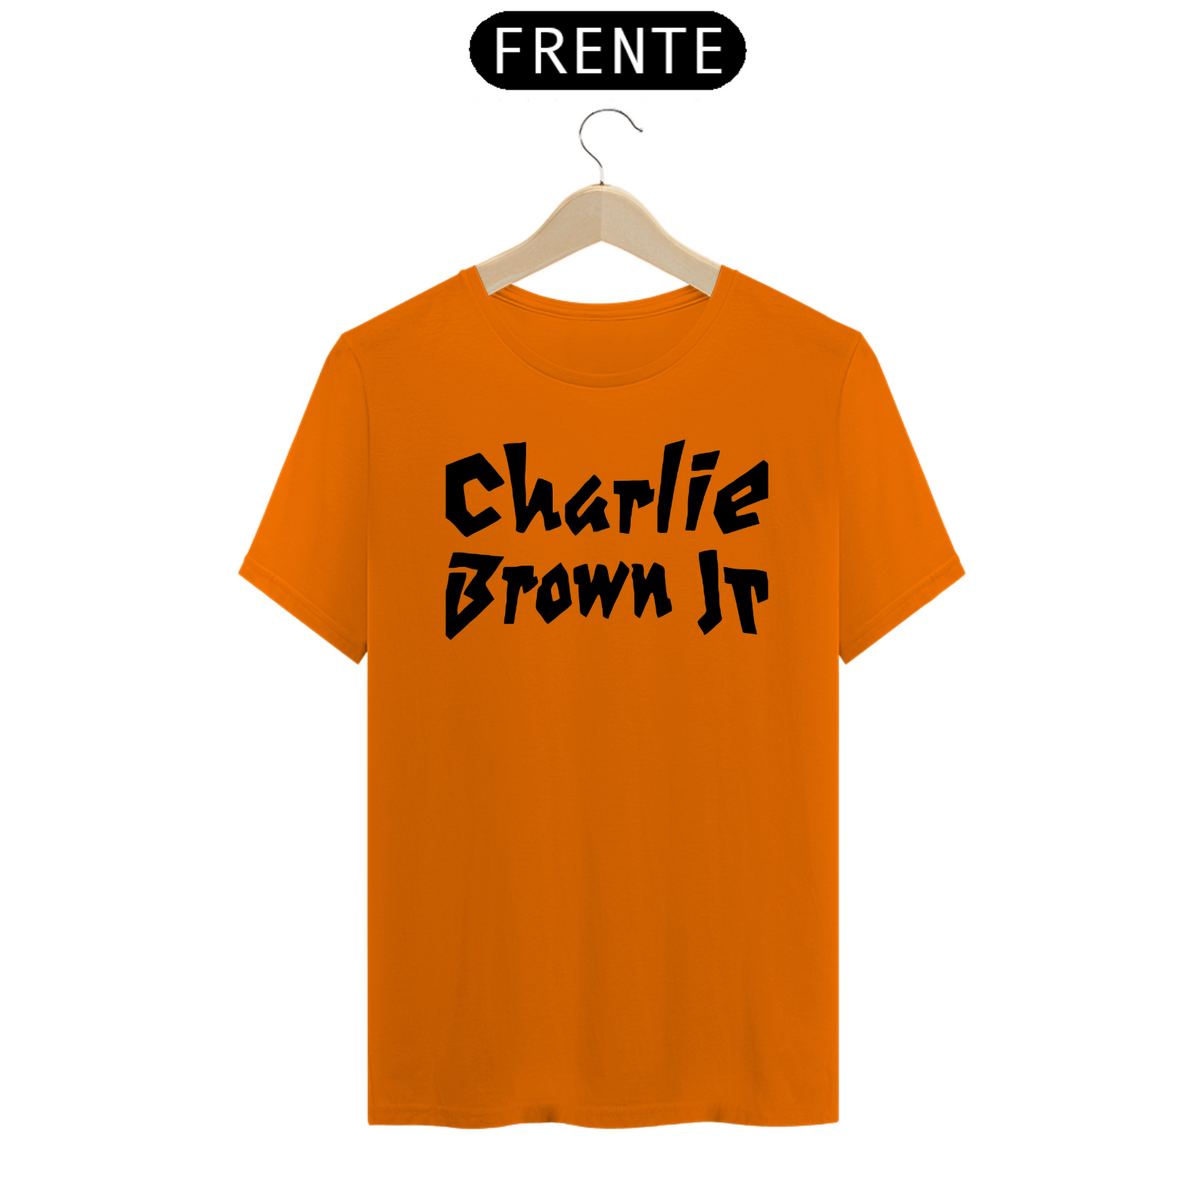 Nome do produto: Charlie Brown Jr.